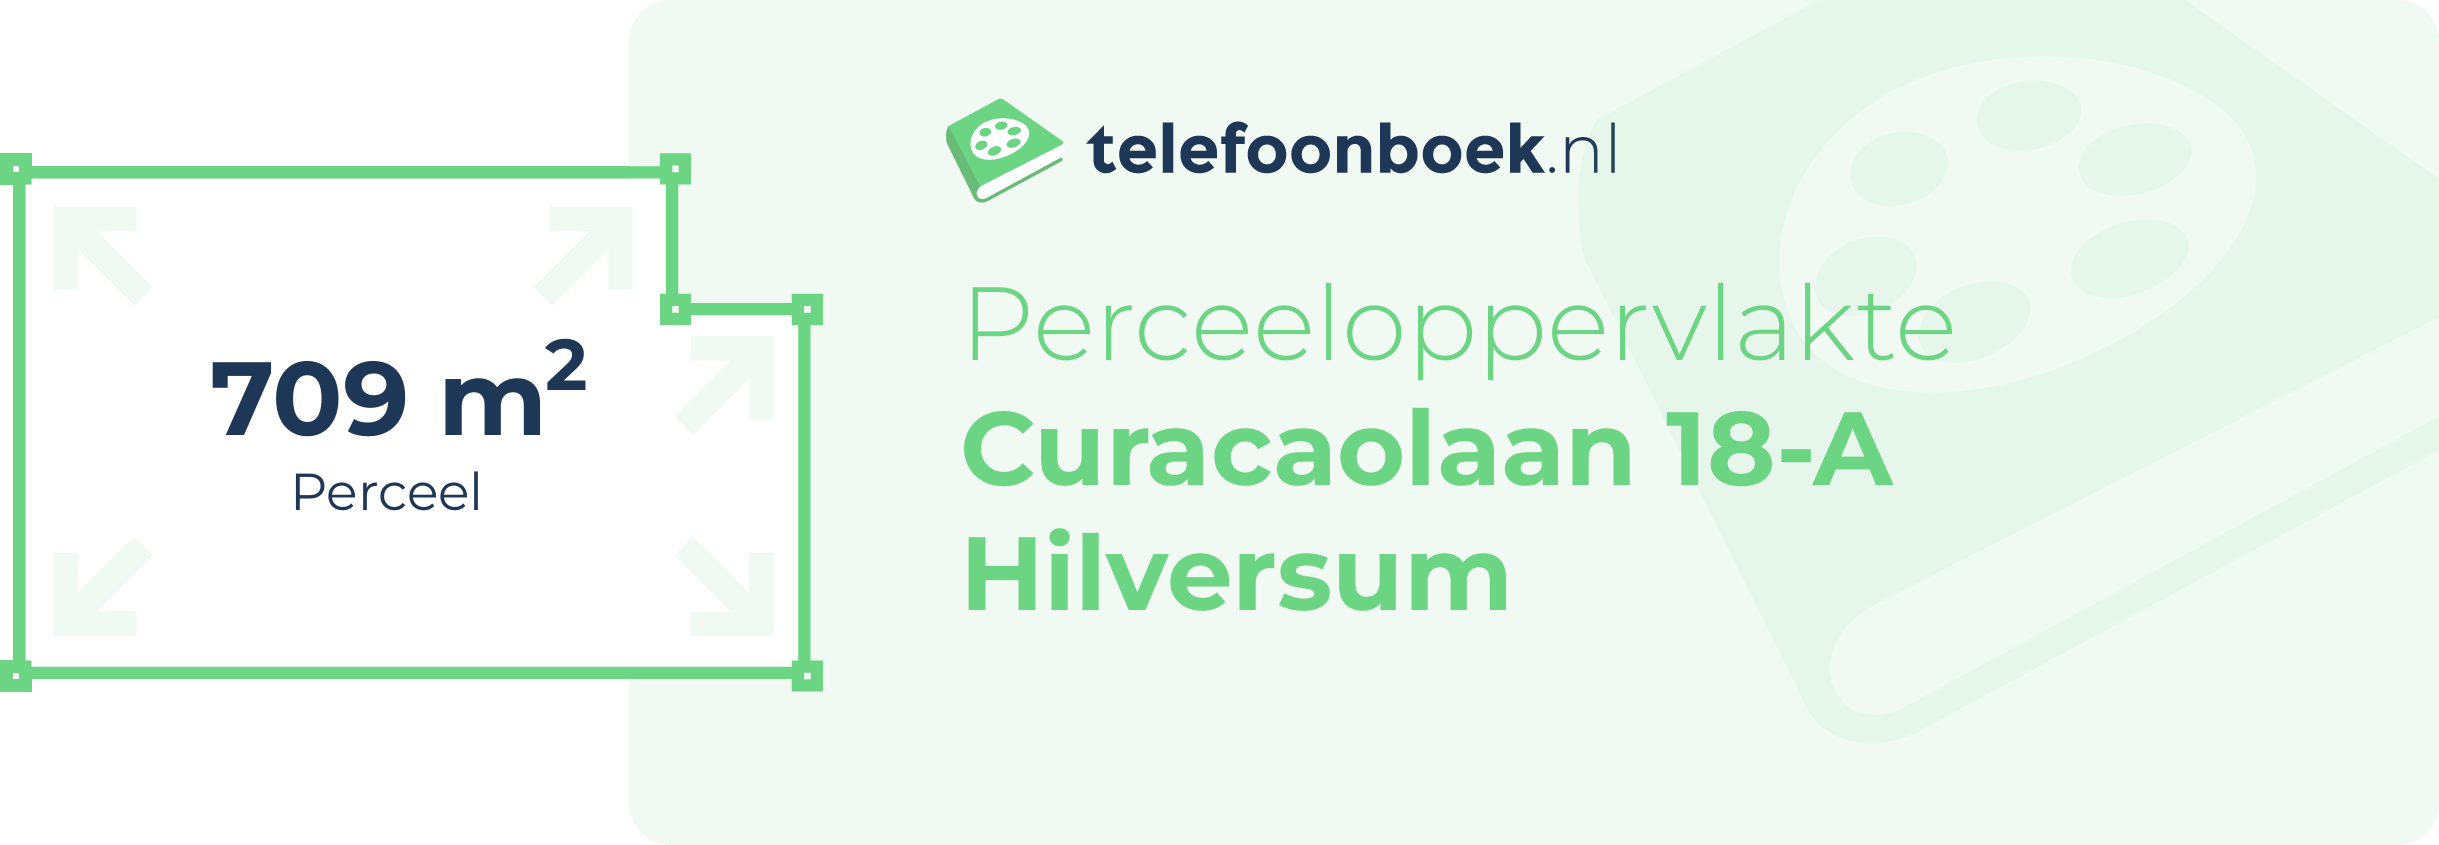 Perceeloppervlakte Curacaolaan 18-A Hilversum